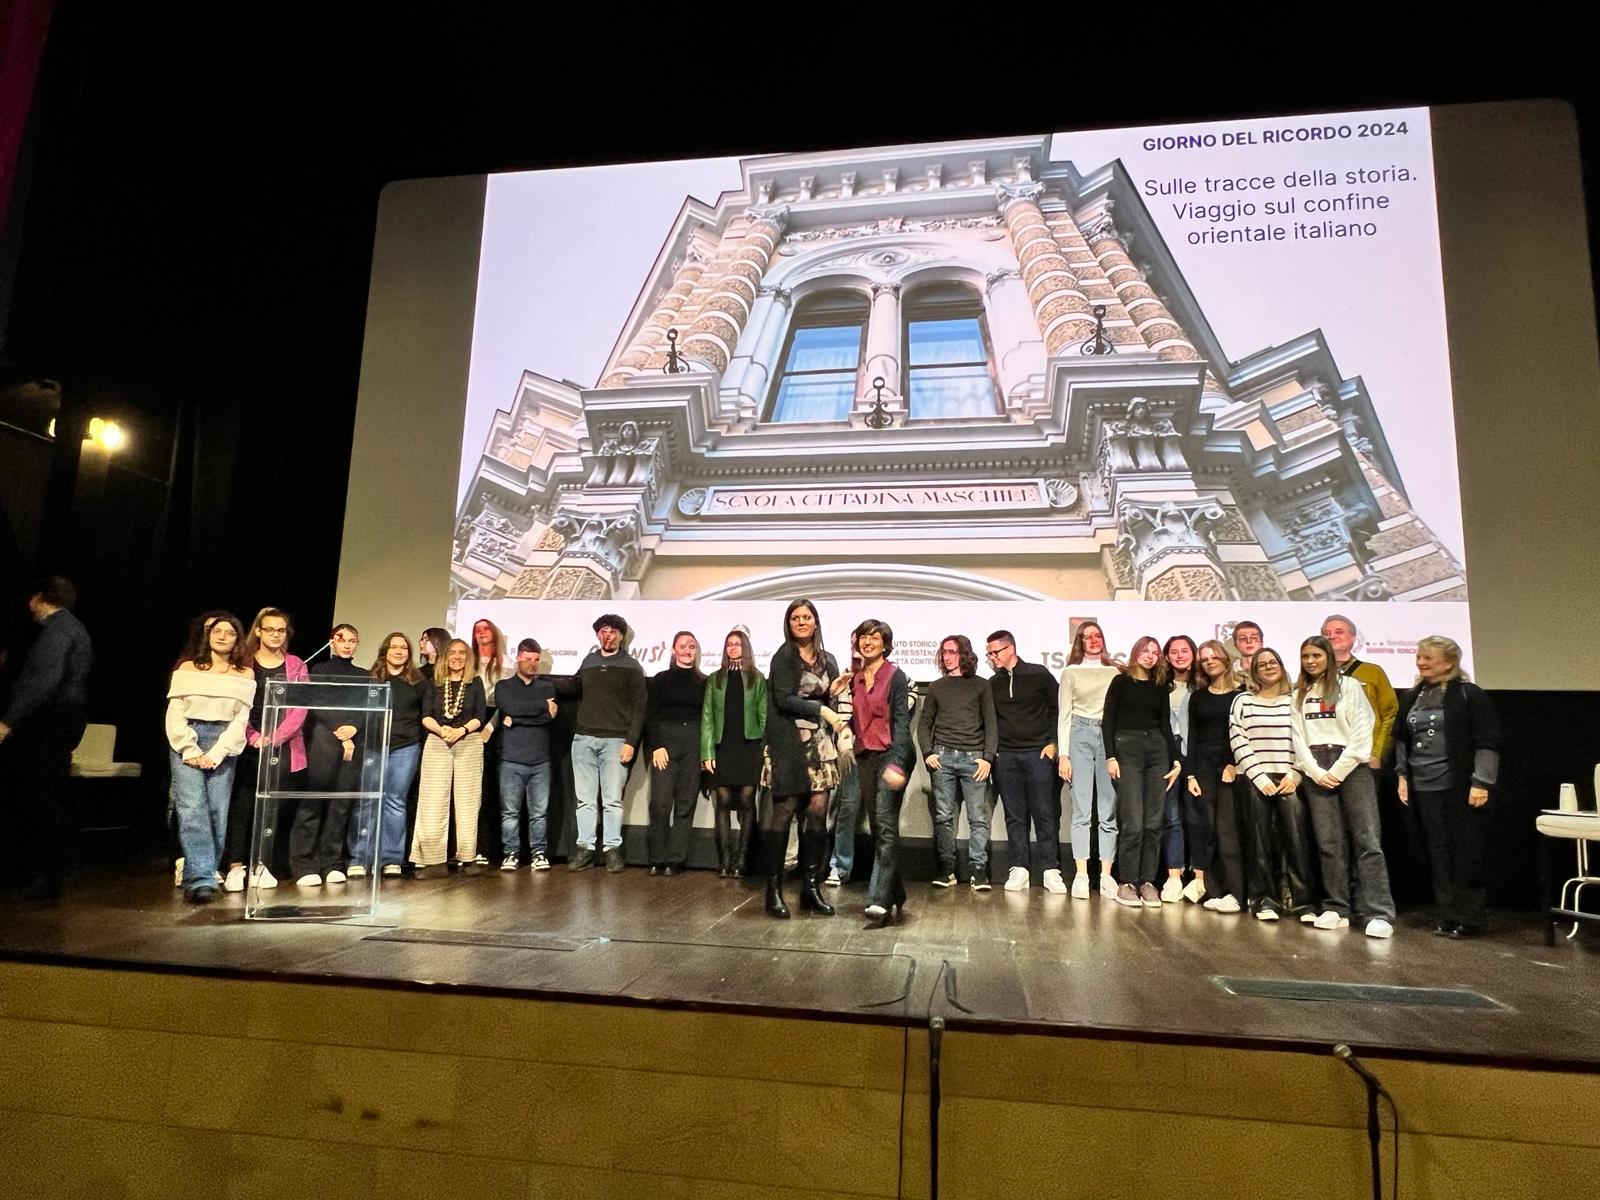 Immagine Giorno del ricordo, sul palco studenti italiani e croati spiegano insieme le foibe 